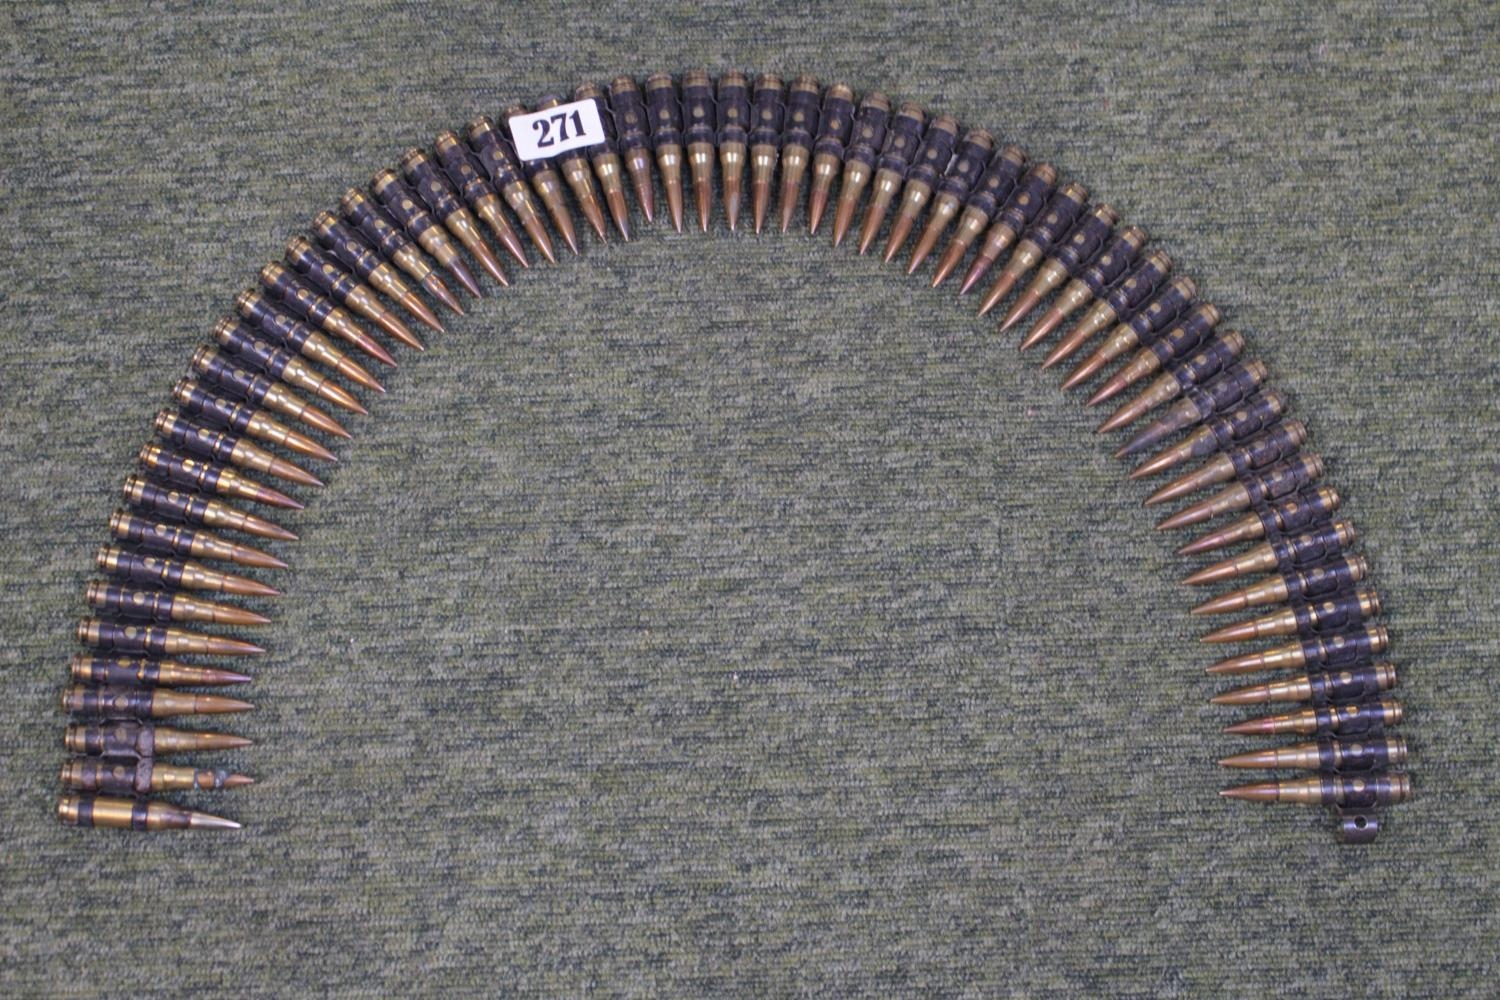 Belt of 60 machine gun bullets inert